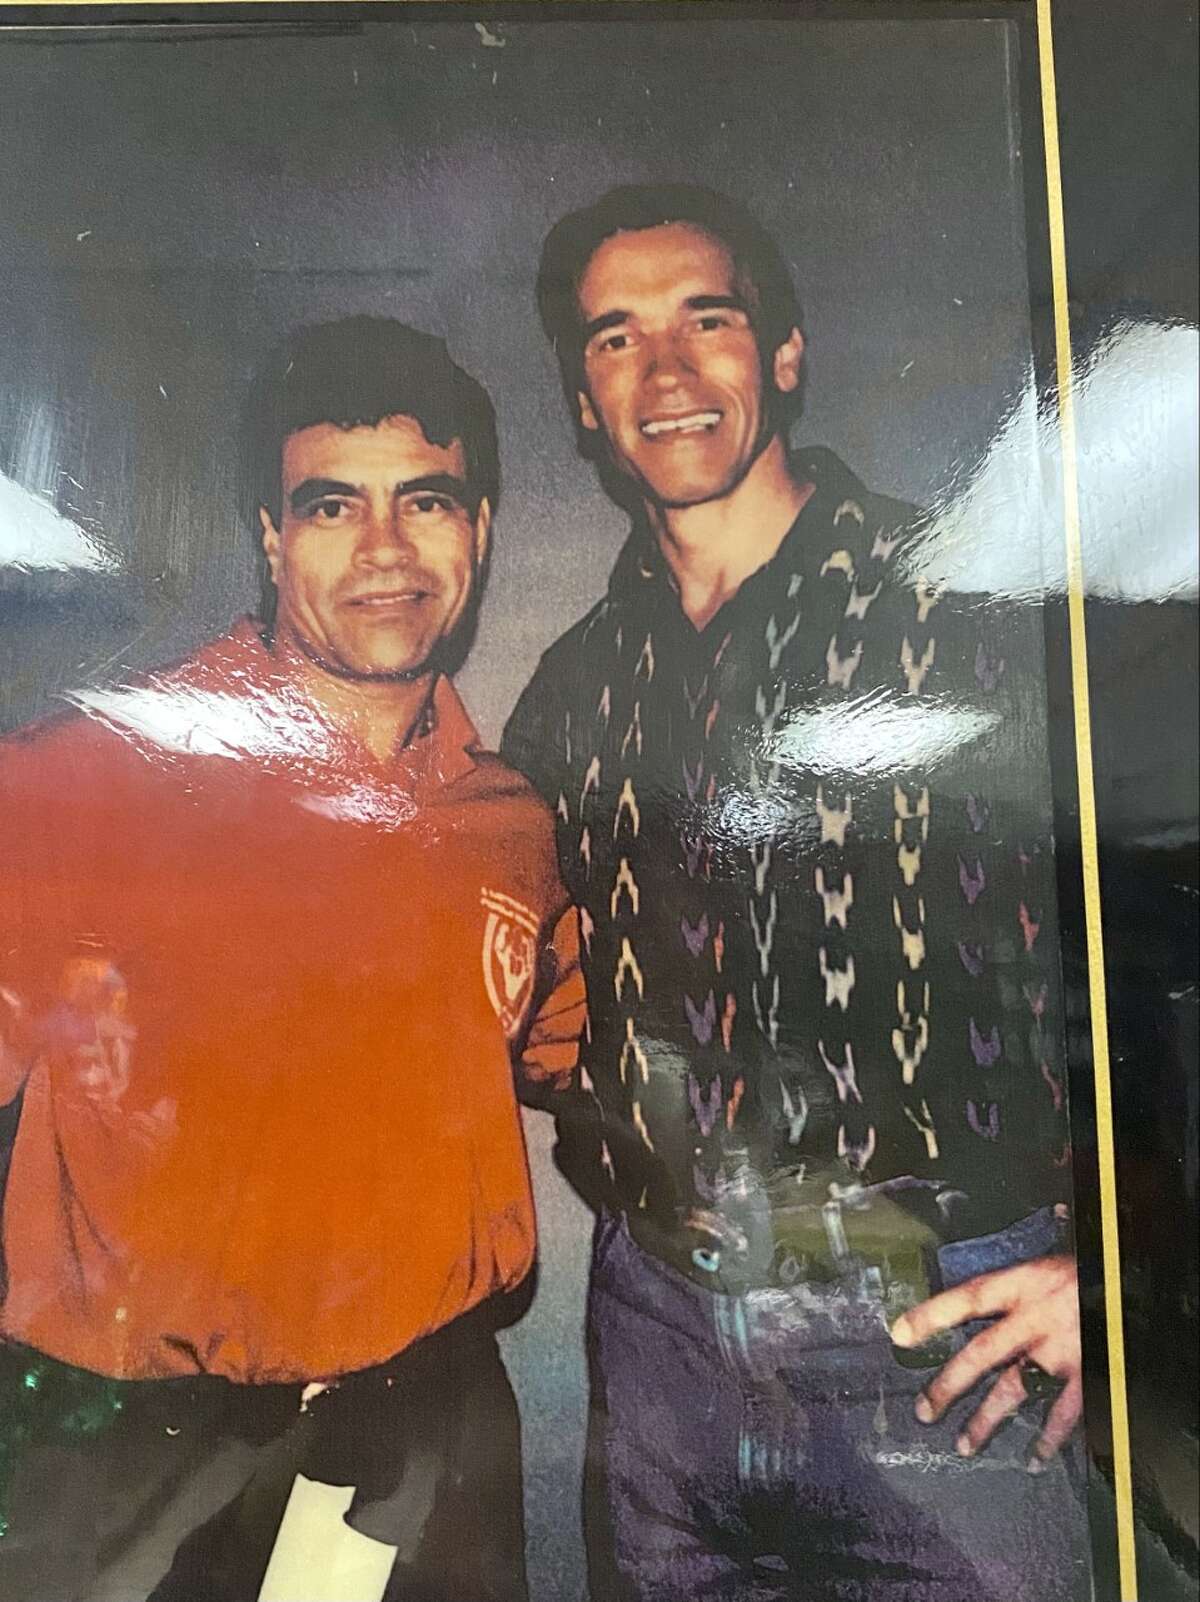 Santos Ramos poses for a photograph with Arnold Schwarzenegger.